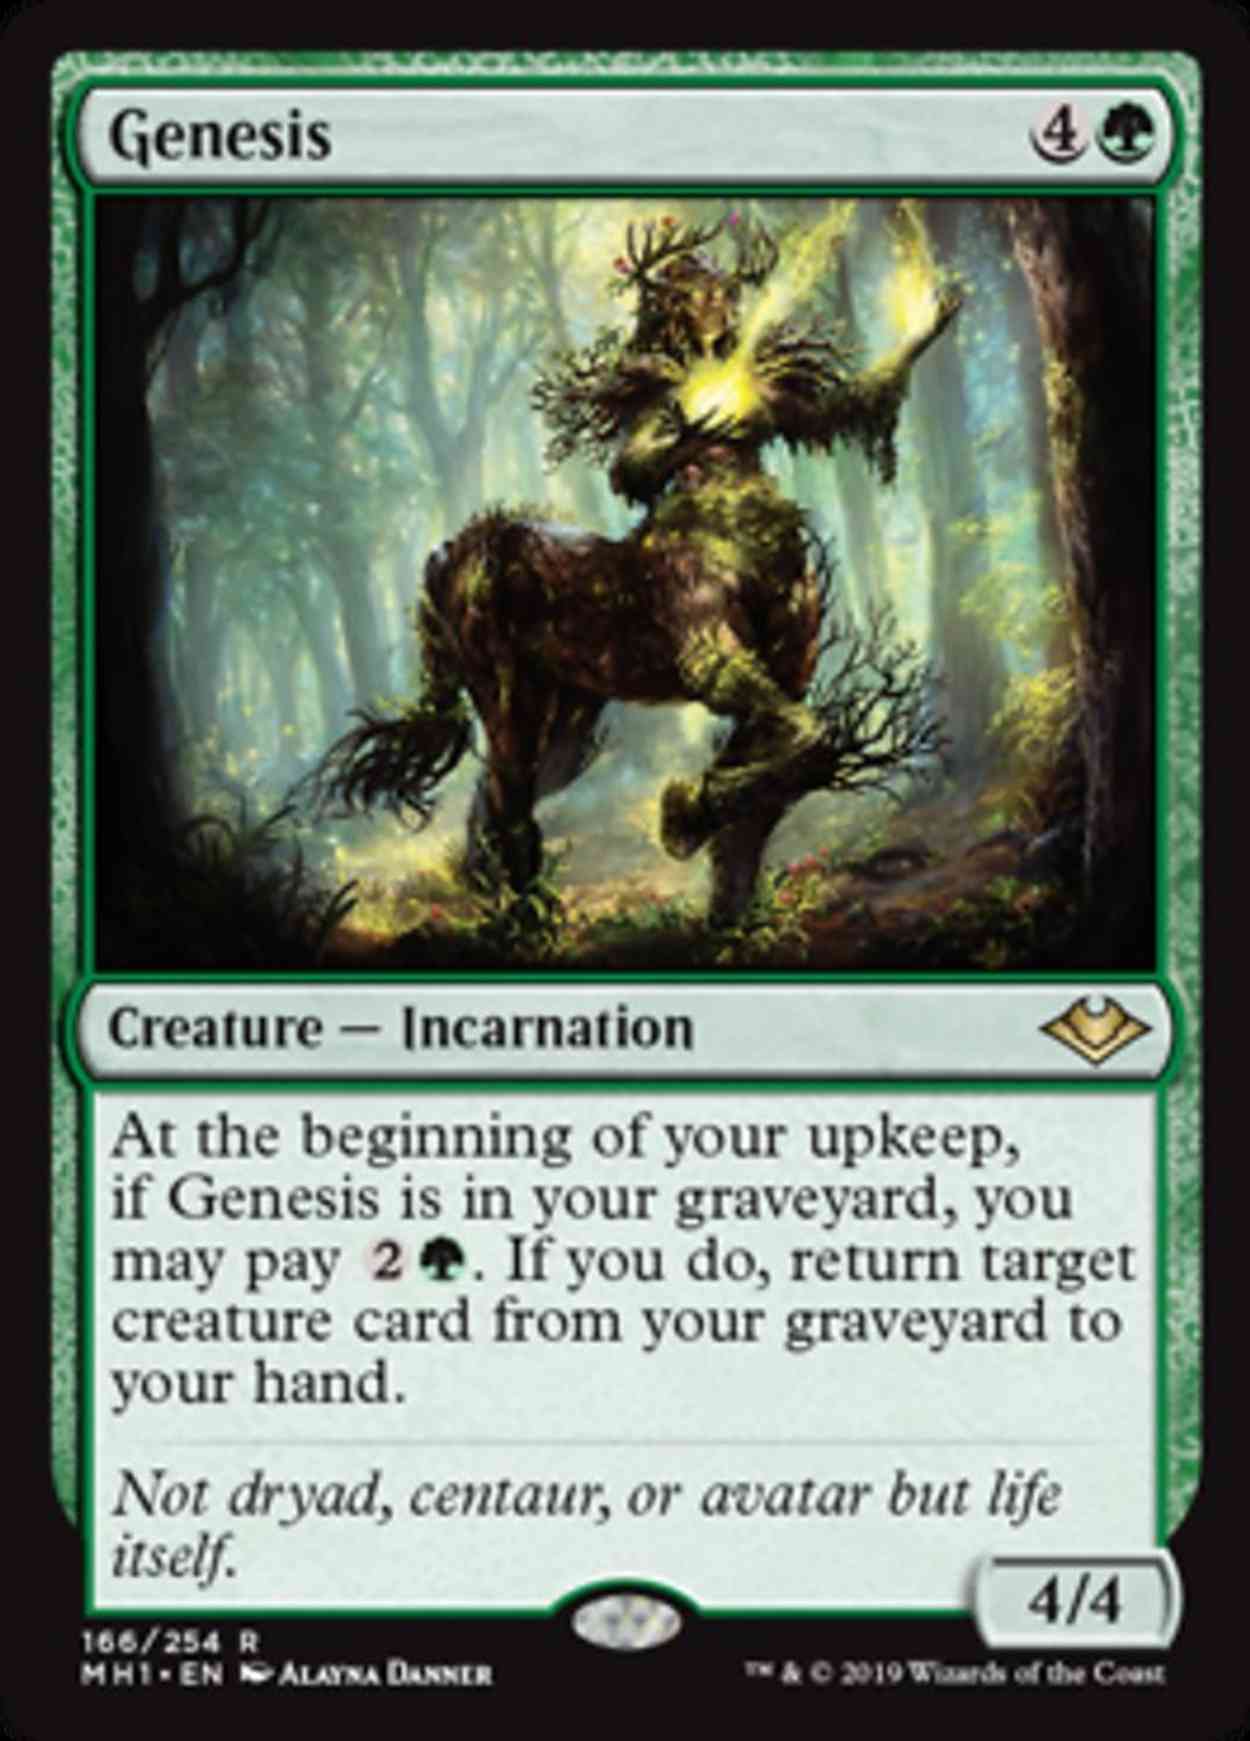 Genesis magic card front